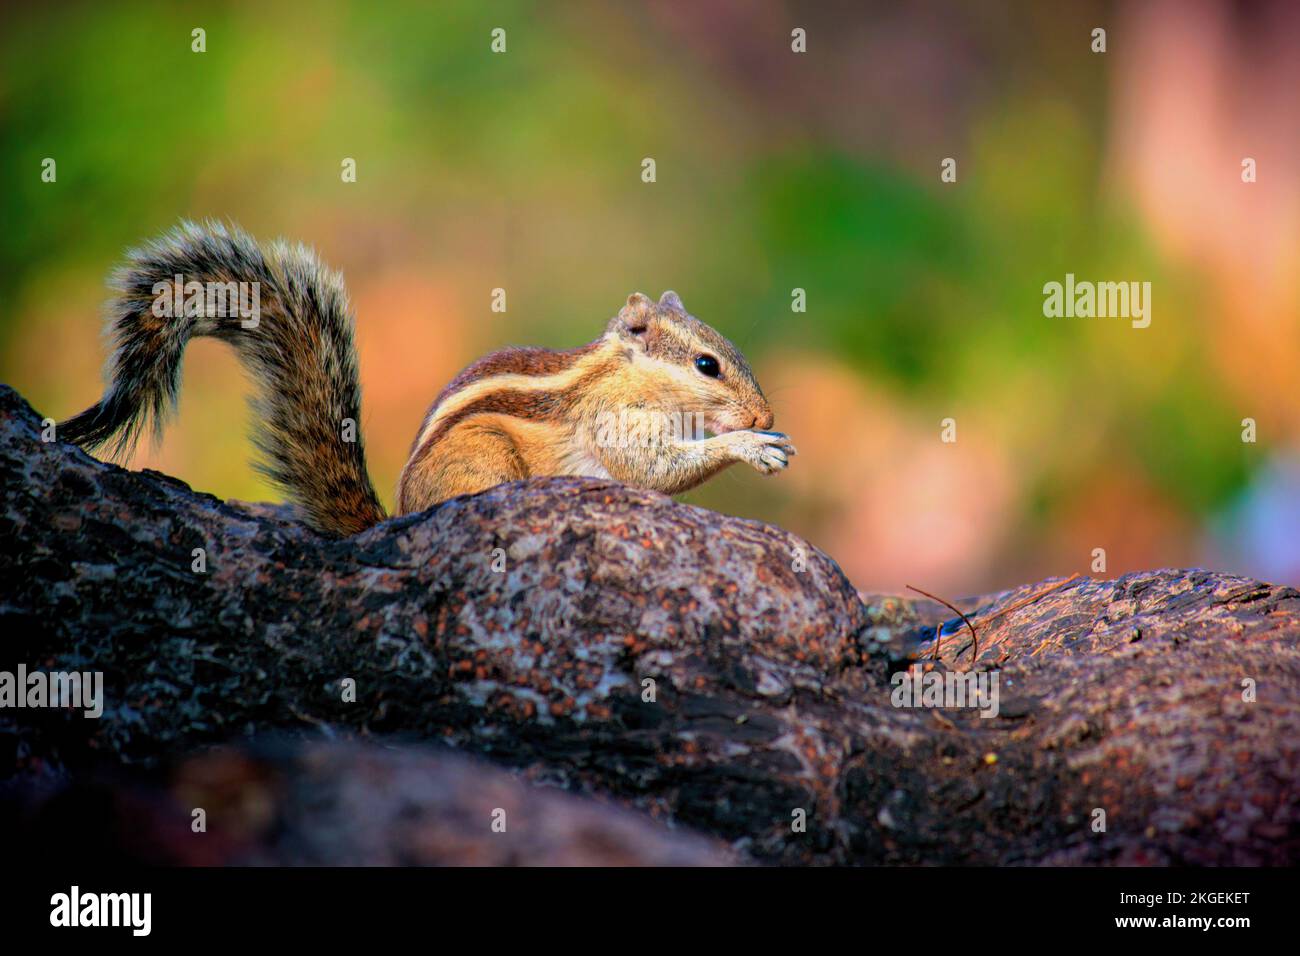 Eichhörnchen auch bekannt als India Palm Eichhörnchen, das in seiner natürlichen Umgebung vor grünem Hintergrund auf dem Baumstamm Nüsse isst Stockfoto